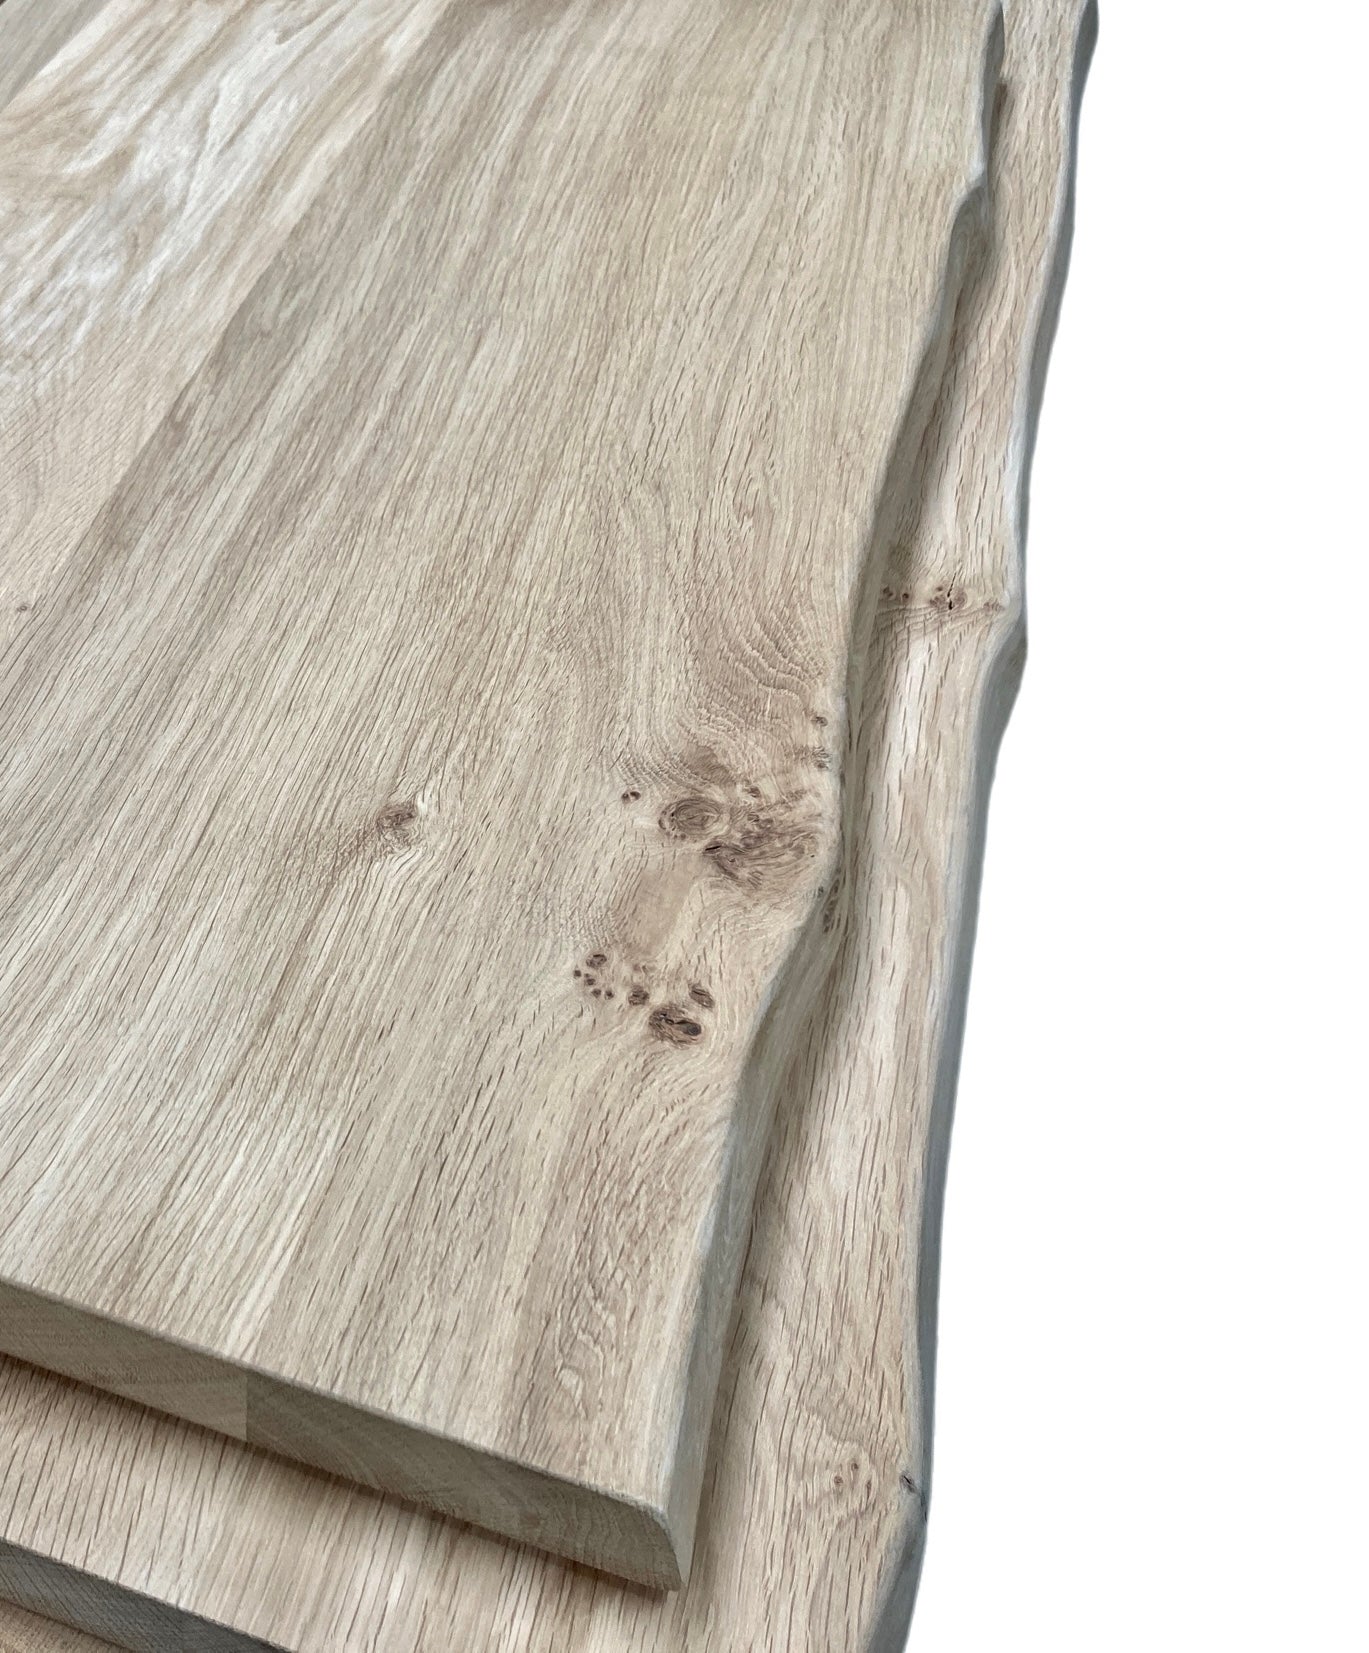 Oak boards - 40 mm